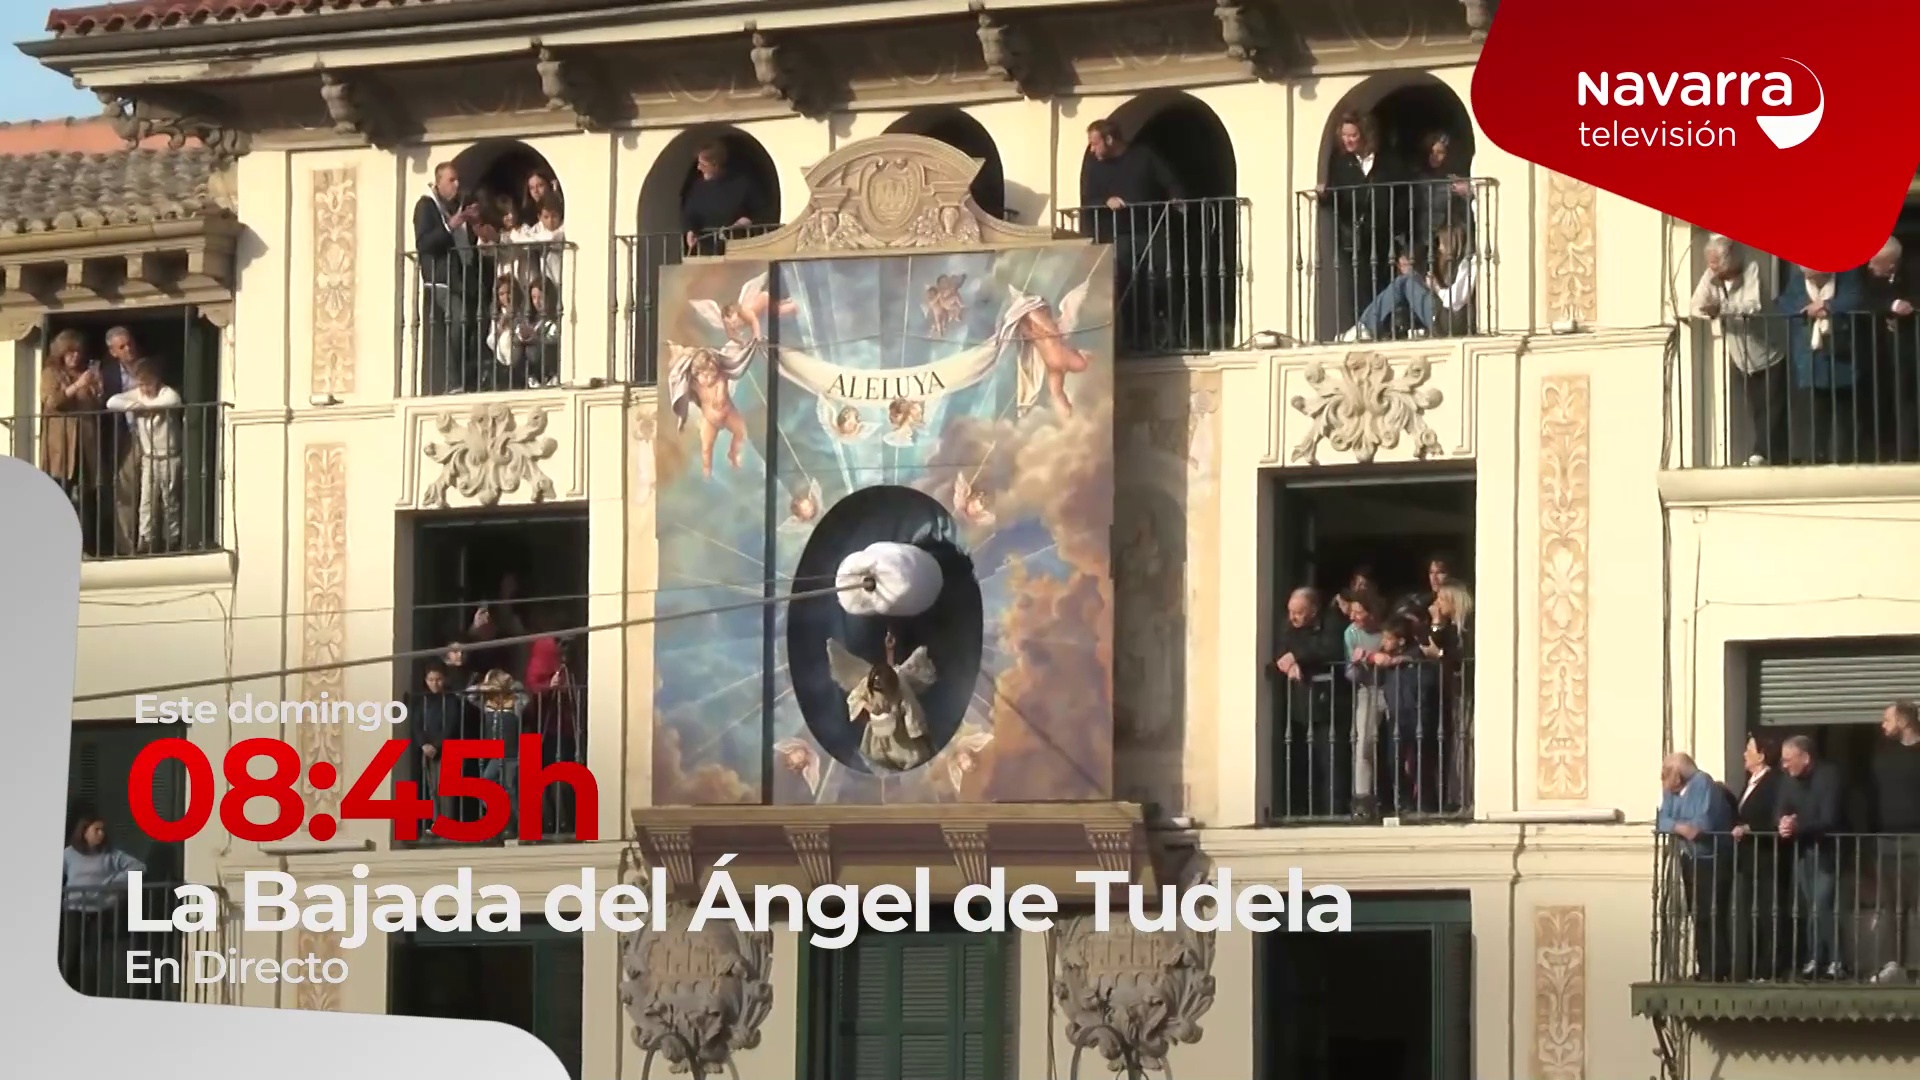 La Bajada del Ángel de Tudela en directo el domingo en Navarra TV